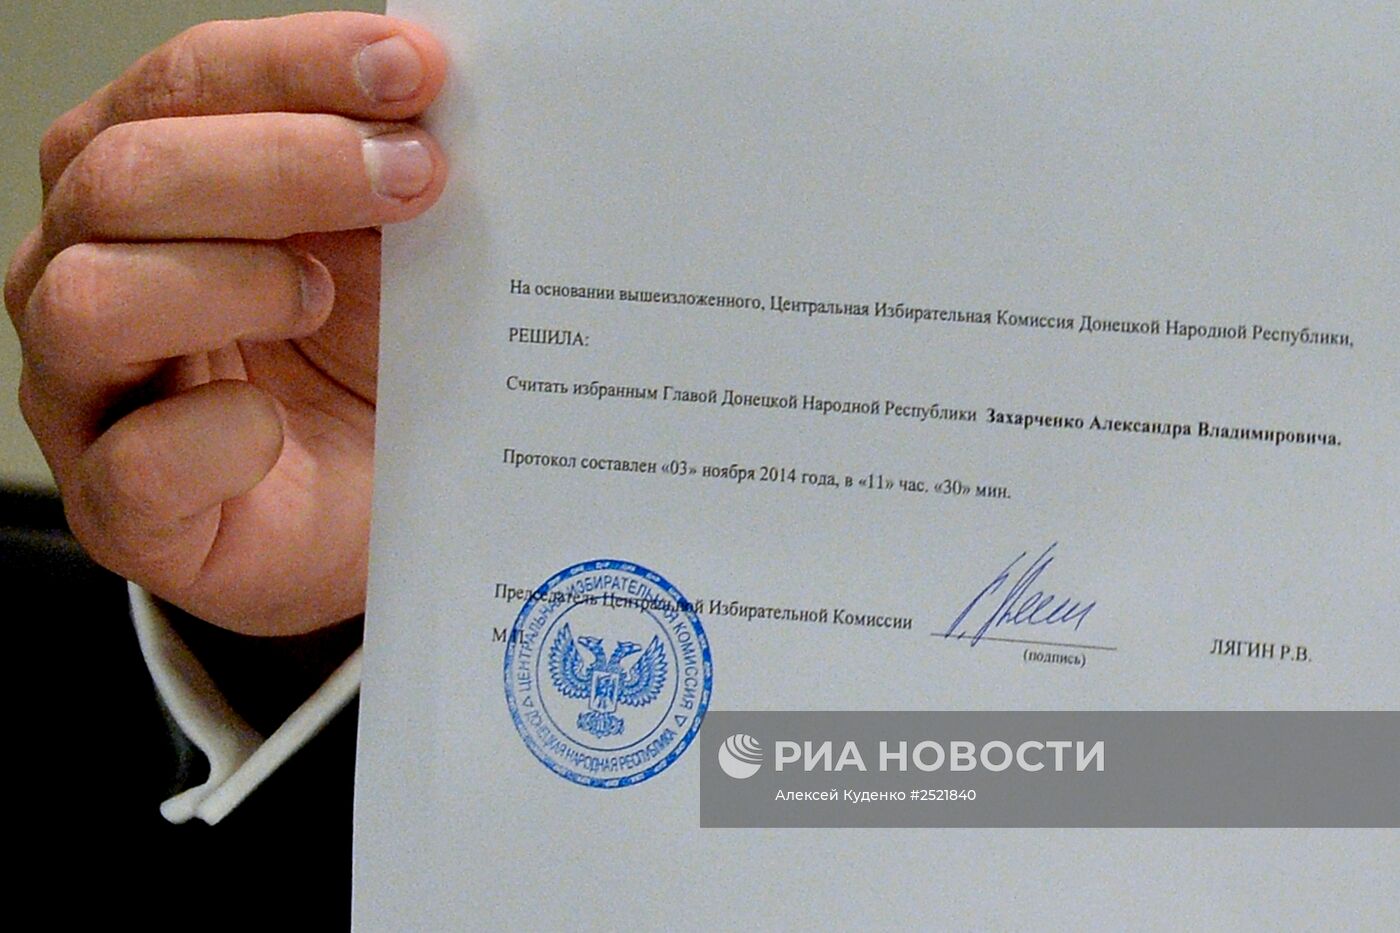 Действующий премьер-министр ДНР Александр Захарченко лидирует на выборах главы ДНР